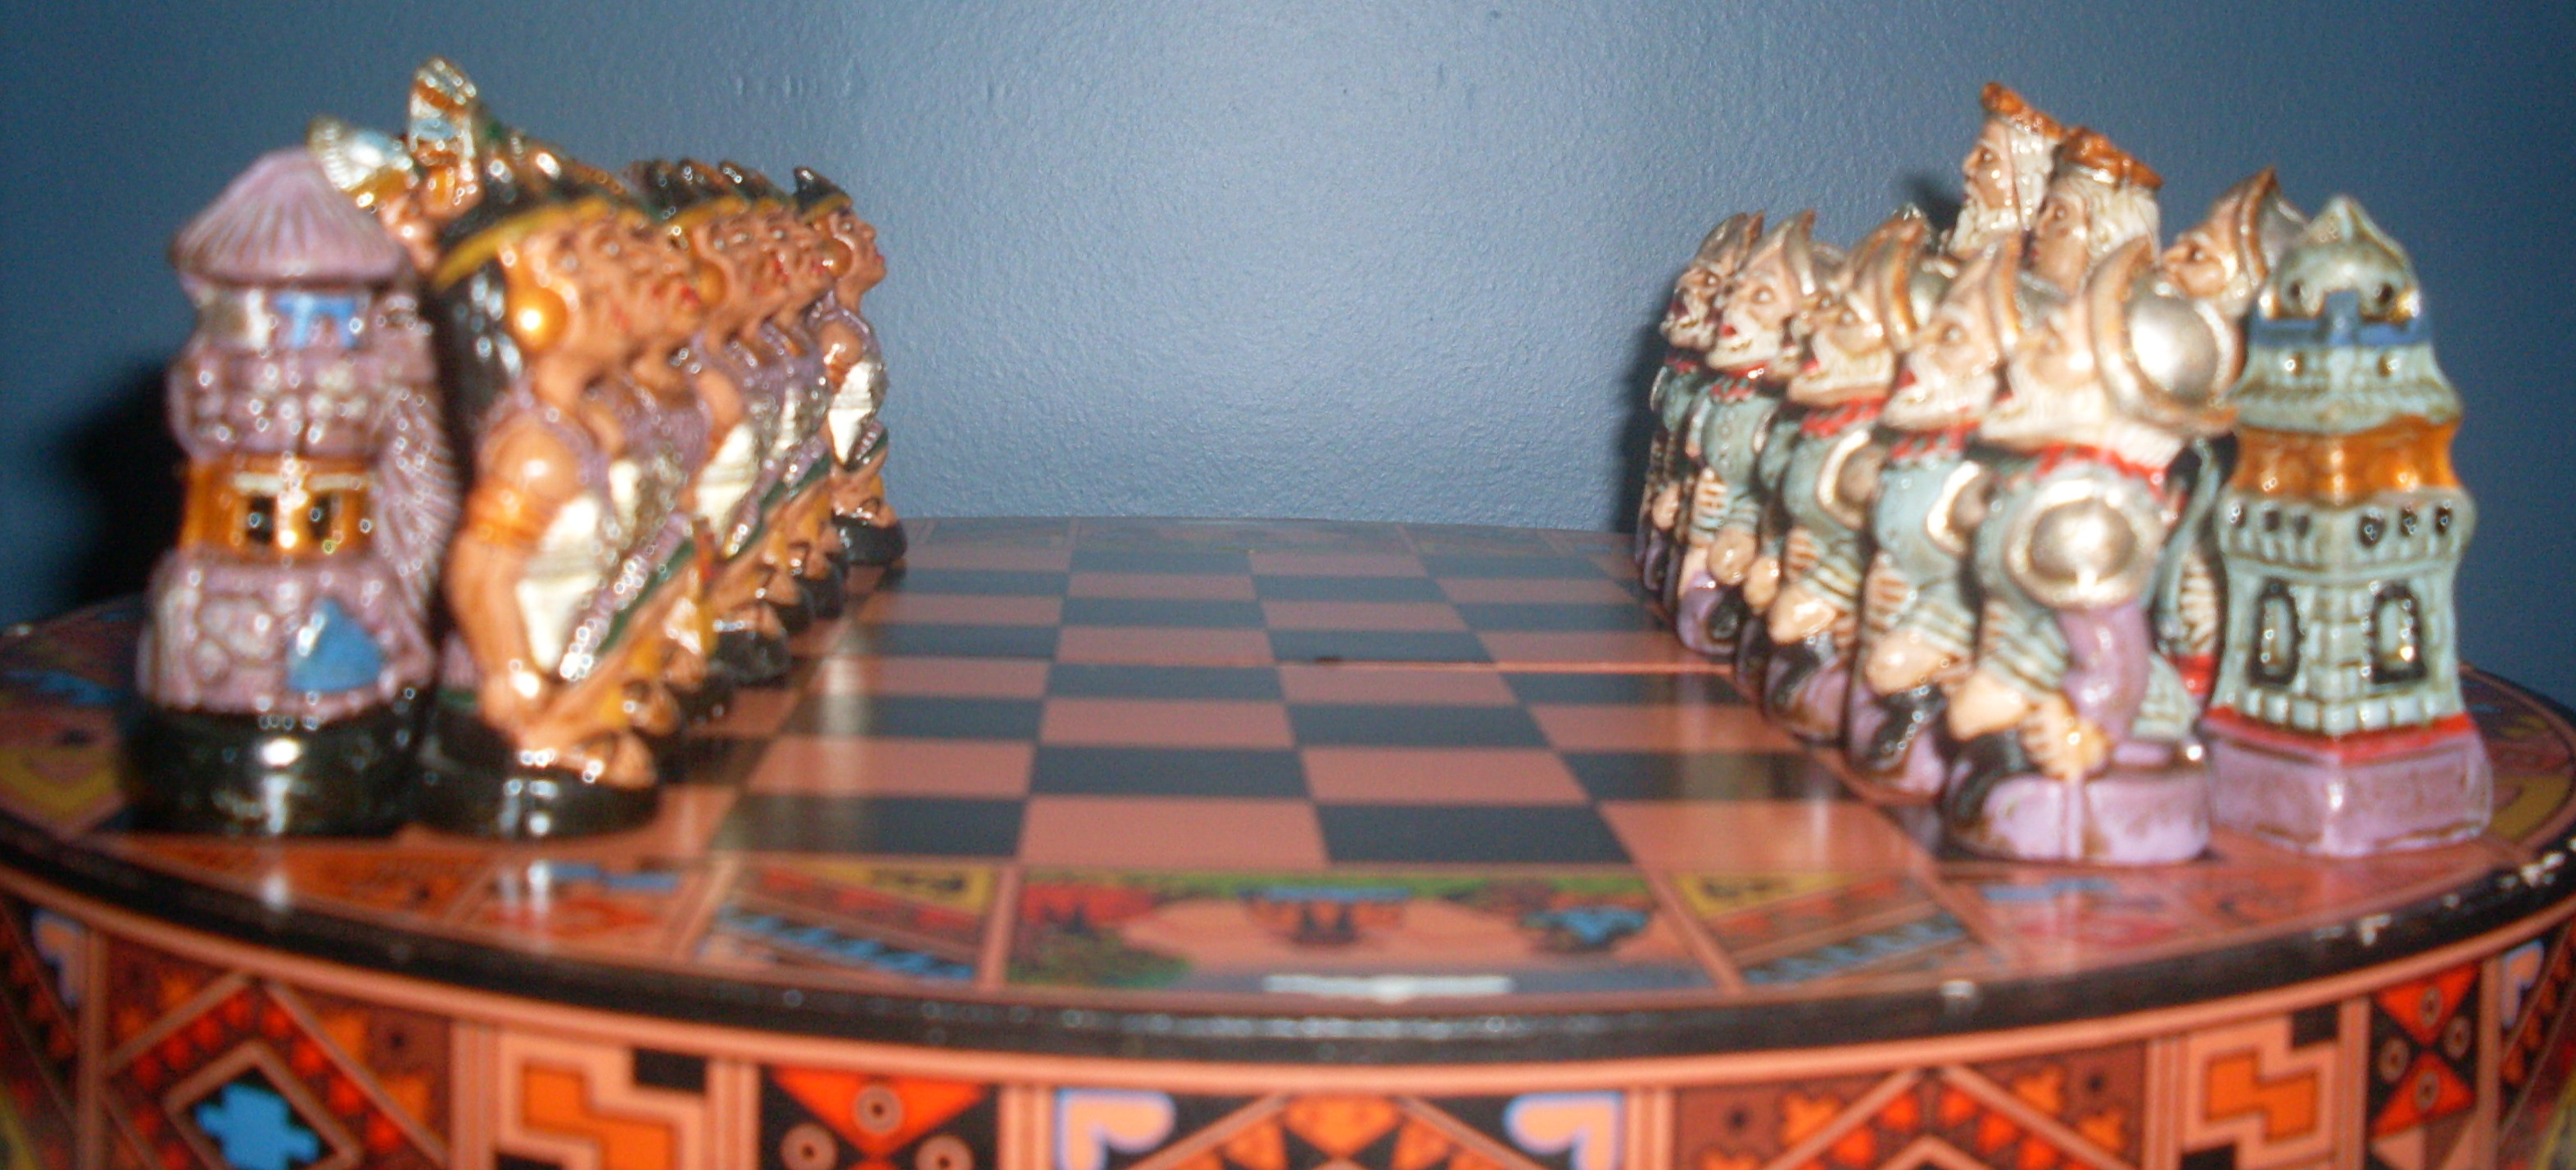 O xadrez se torna uma metáfora enquanto um jovem visionário navega pelas  complexidades dos negócios vertical mobile wallpa